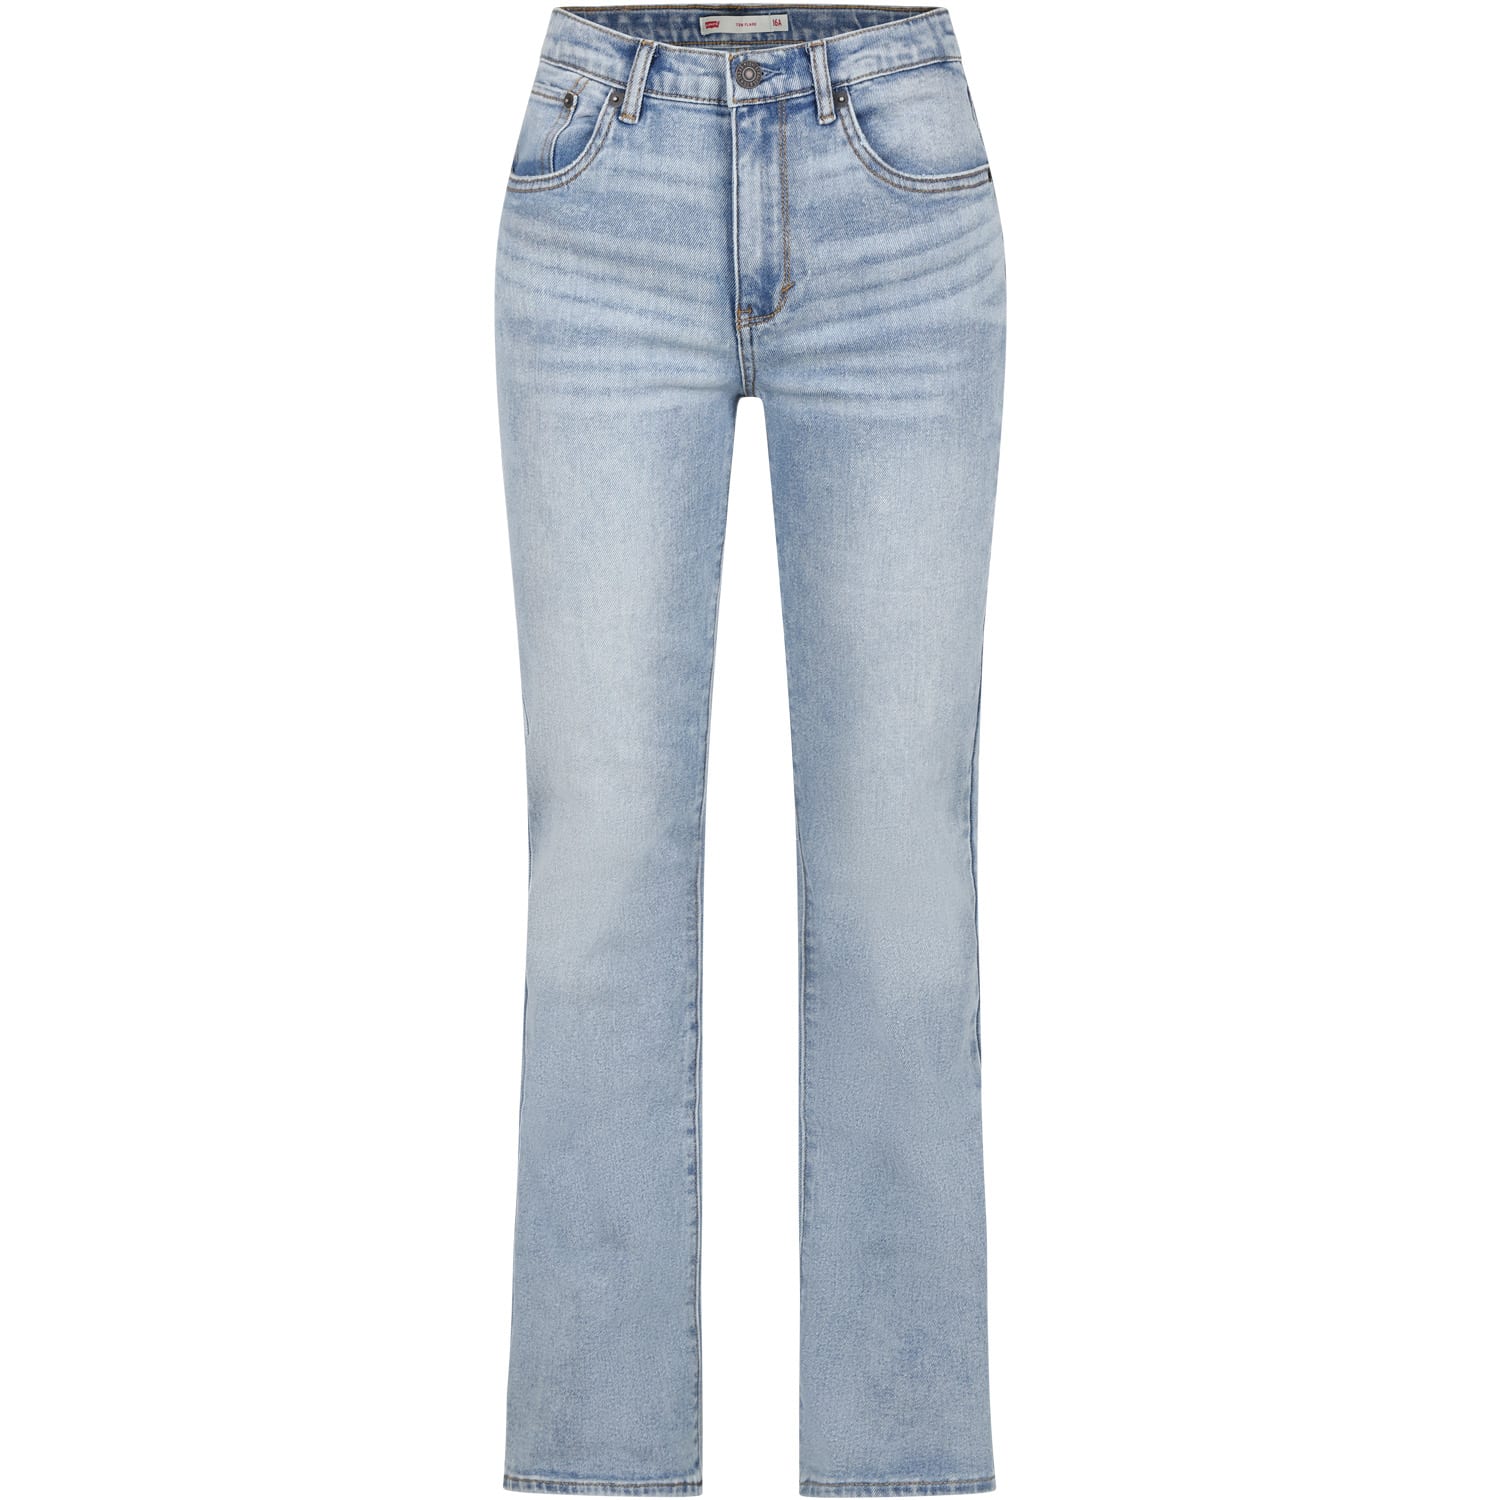 Shop Levi's Denim Jeans For Girl